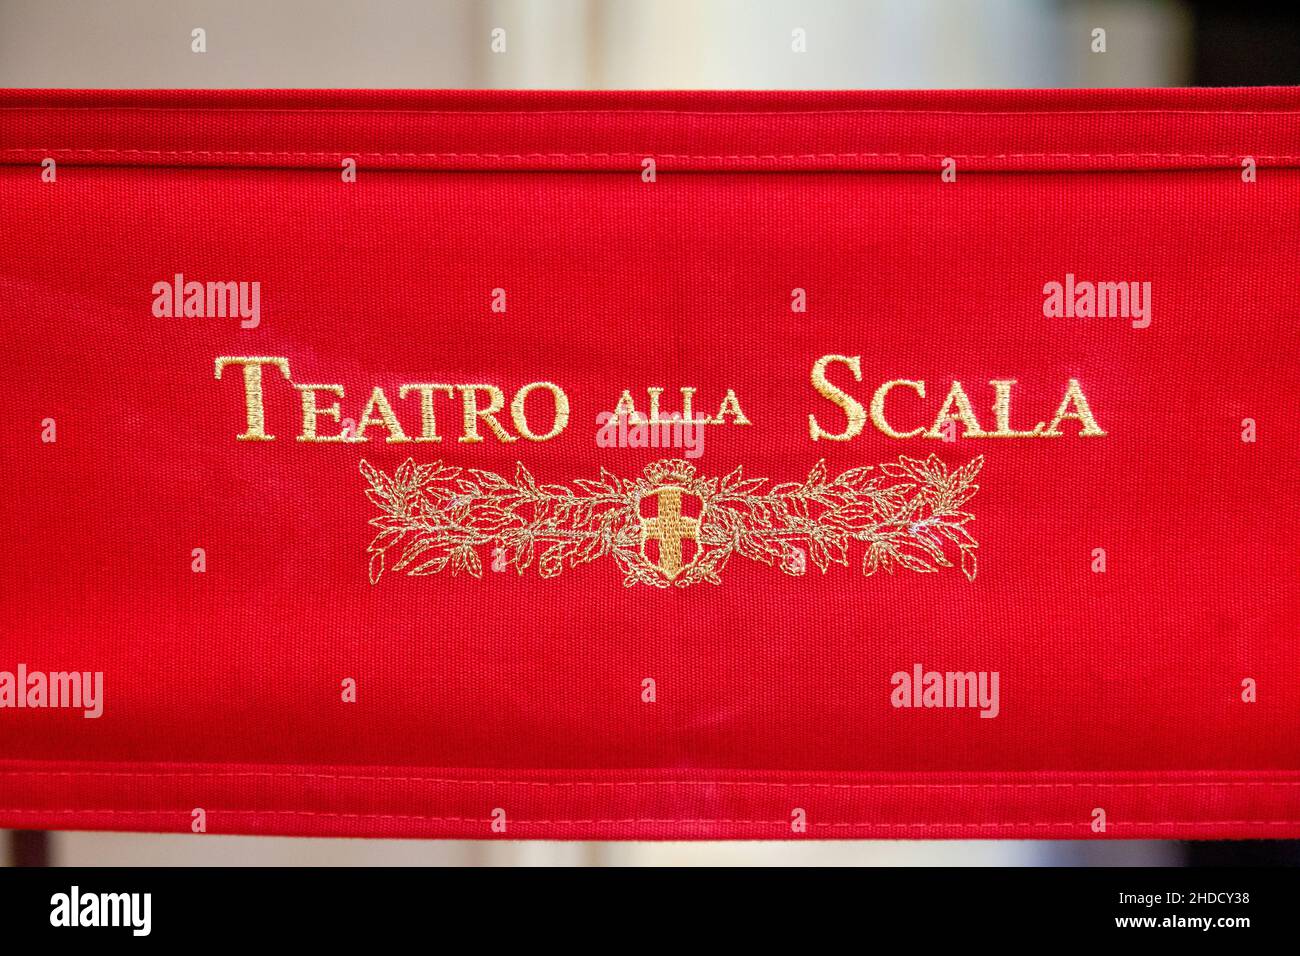 Il logo della famosa Scala di Milano, o Teatro alla Scala di Milano, il leggendario teatro lirico che ha ospitato i più grandi nomi dell'opera. Foto Stock